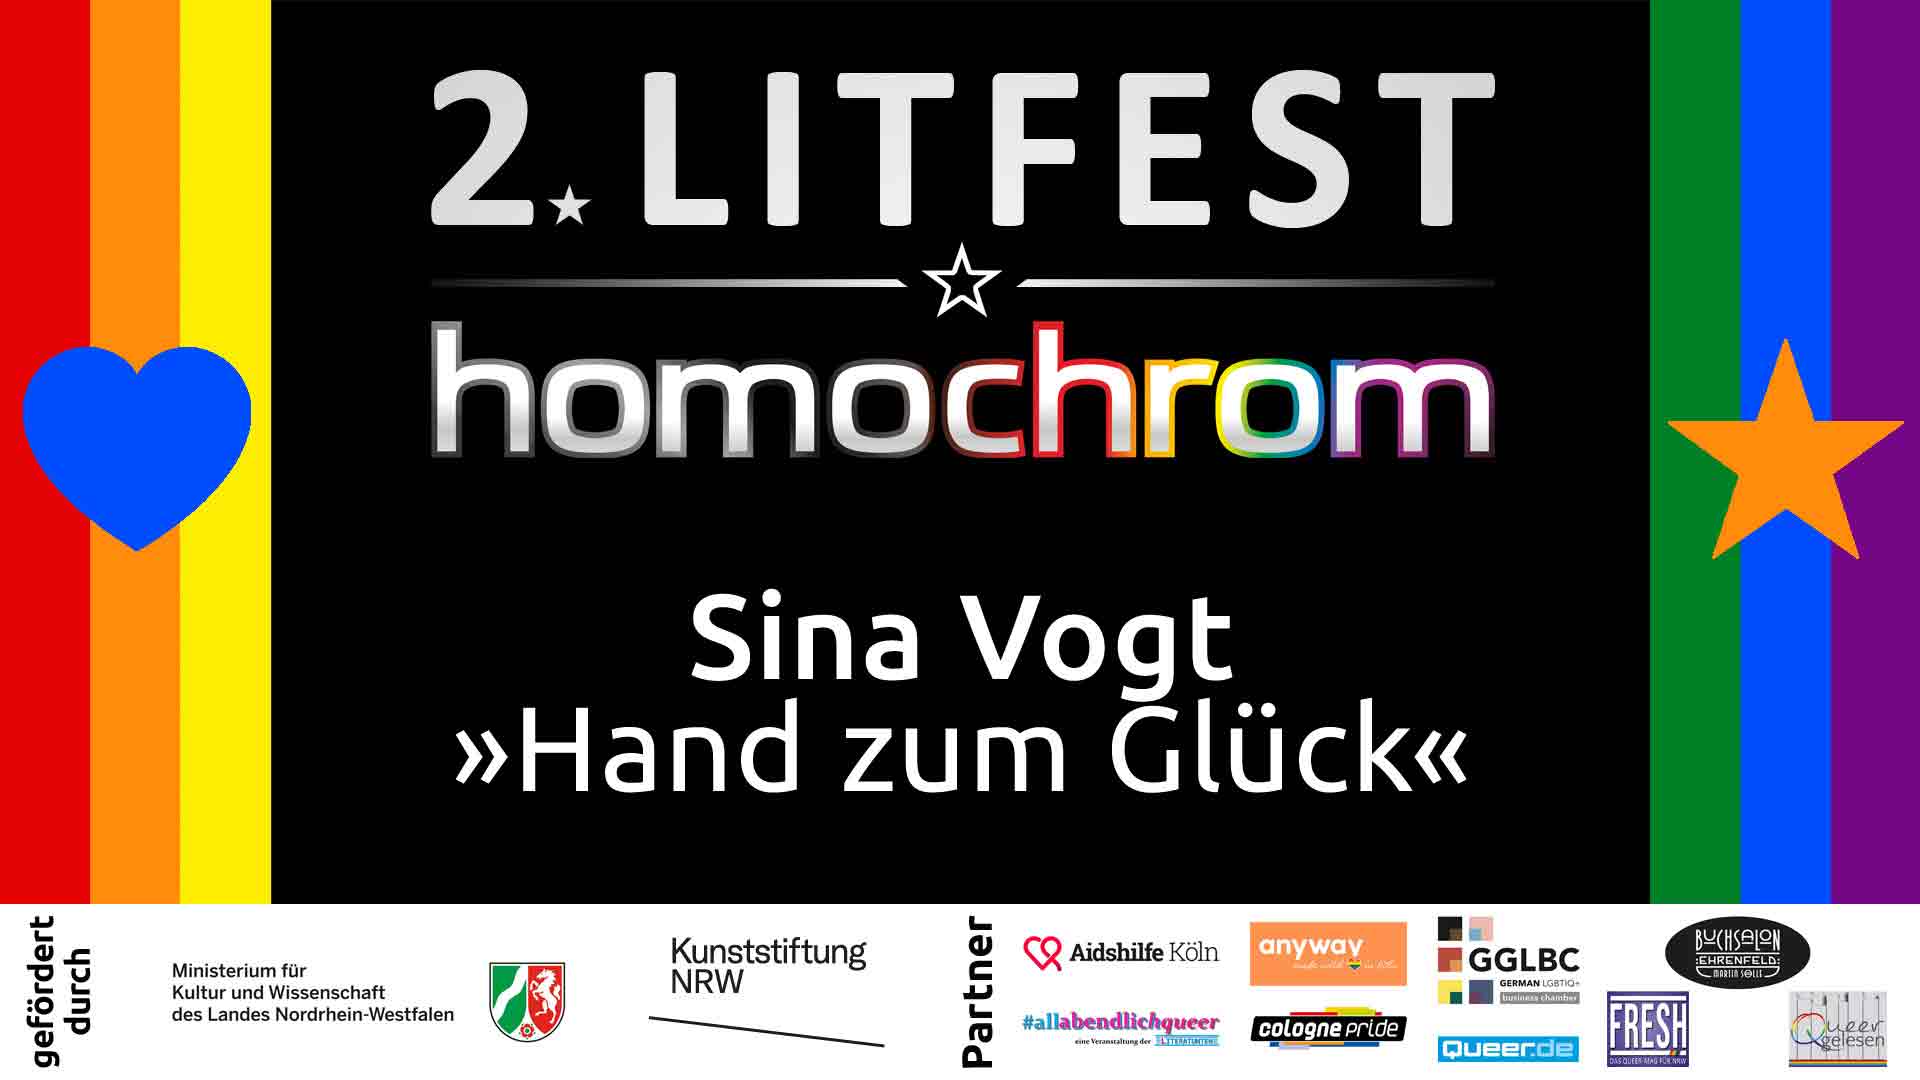 Youtube Video, Sina Vogt, 2. Litfest homochrom